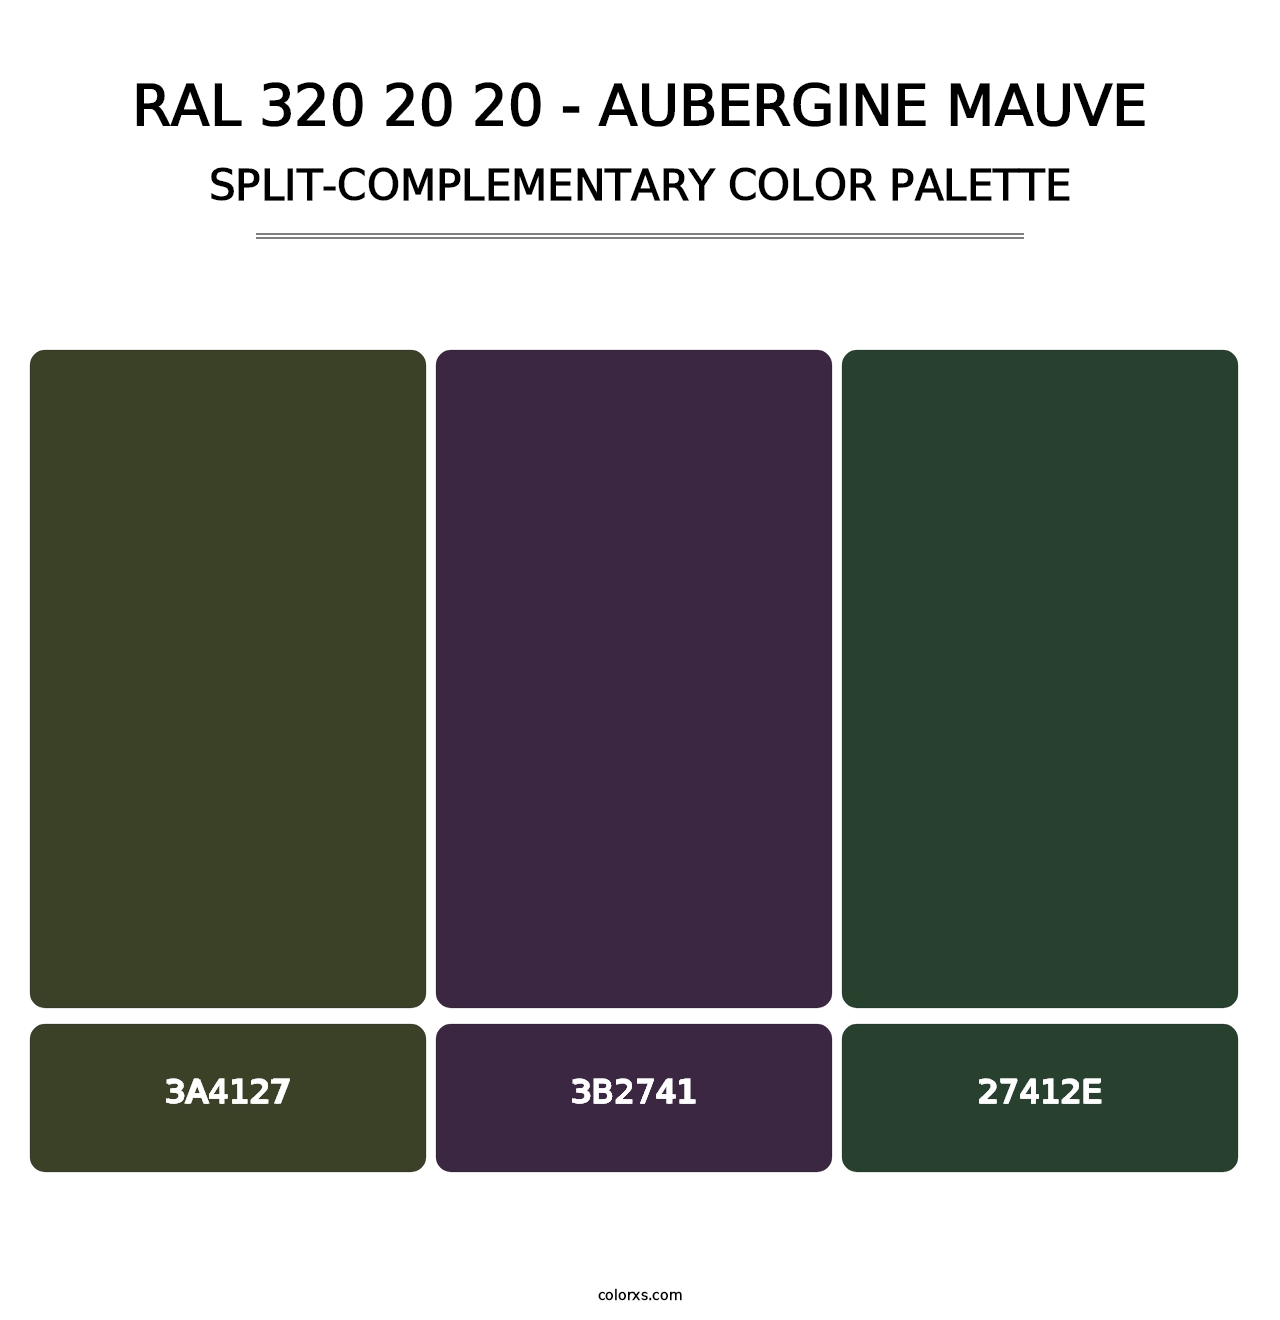 RAL 320 20 20 - Aubergine Mauve - Split-Complementary Color Palette